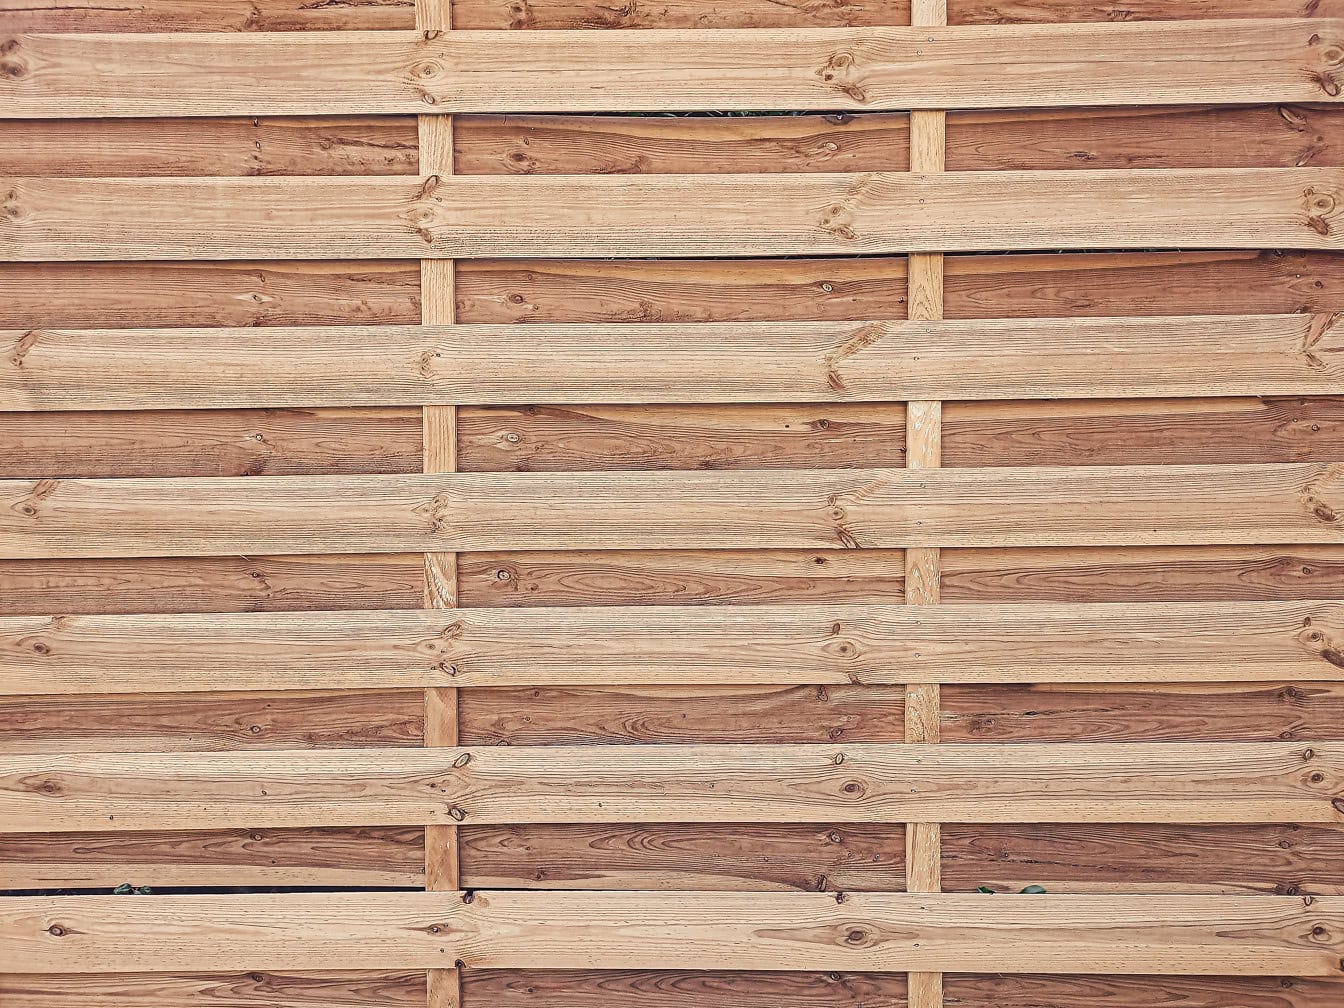 Tekstura rustikalne drvene ploče izrađene od vodoravno složenih tankih borovih letvica